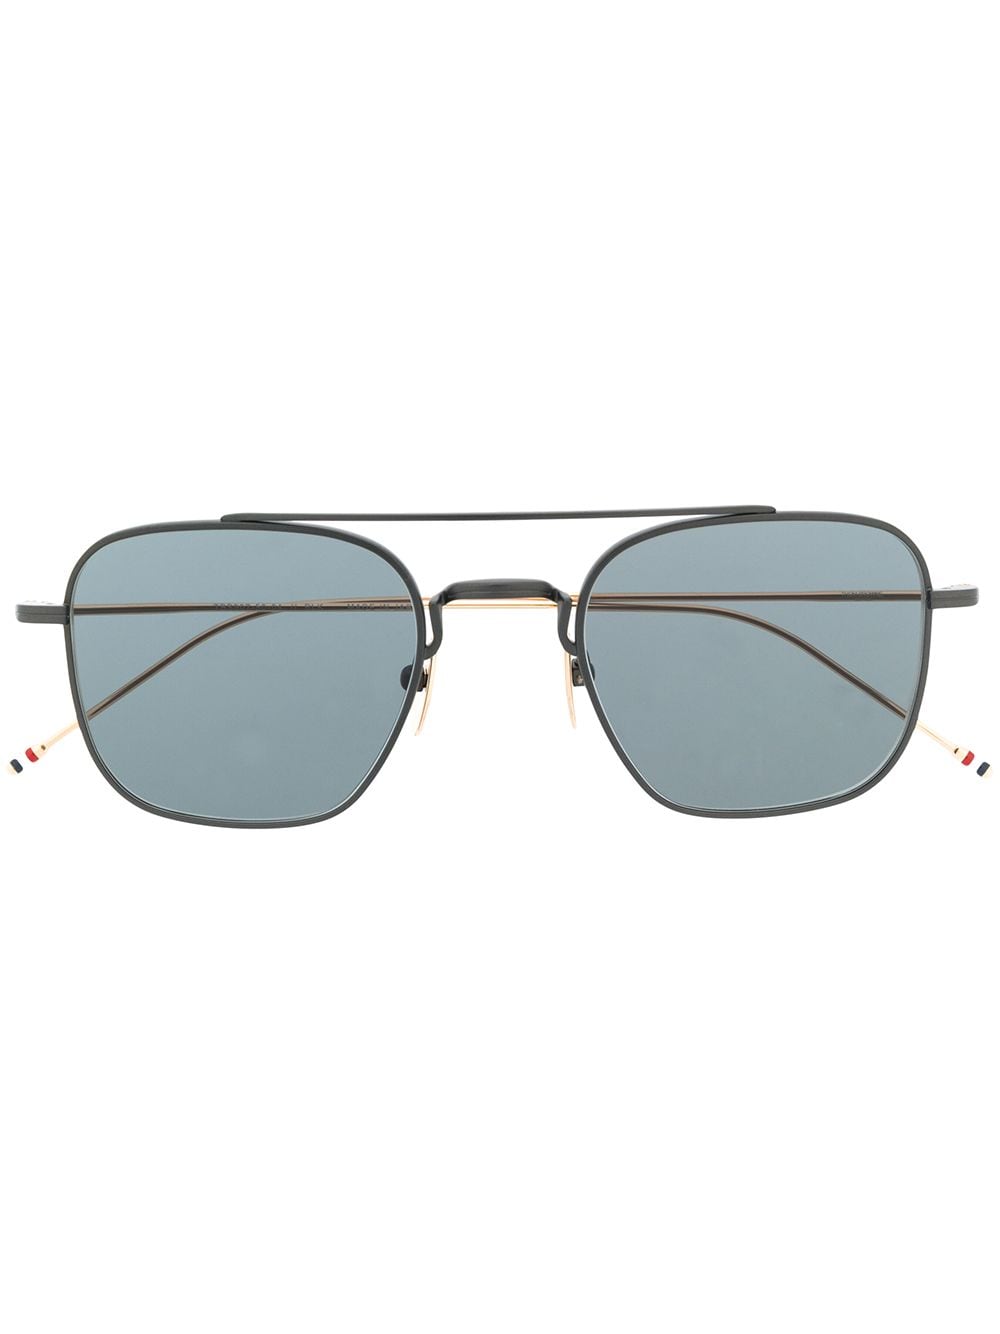 фото Thom browne eyewear солнцезащитные очки-авиаторы в квадратной оправе